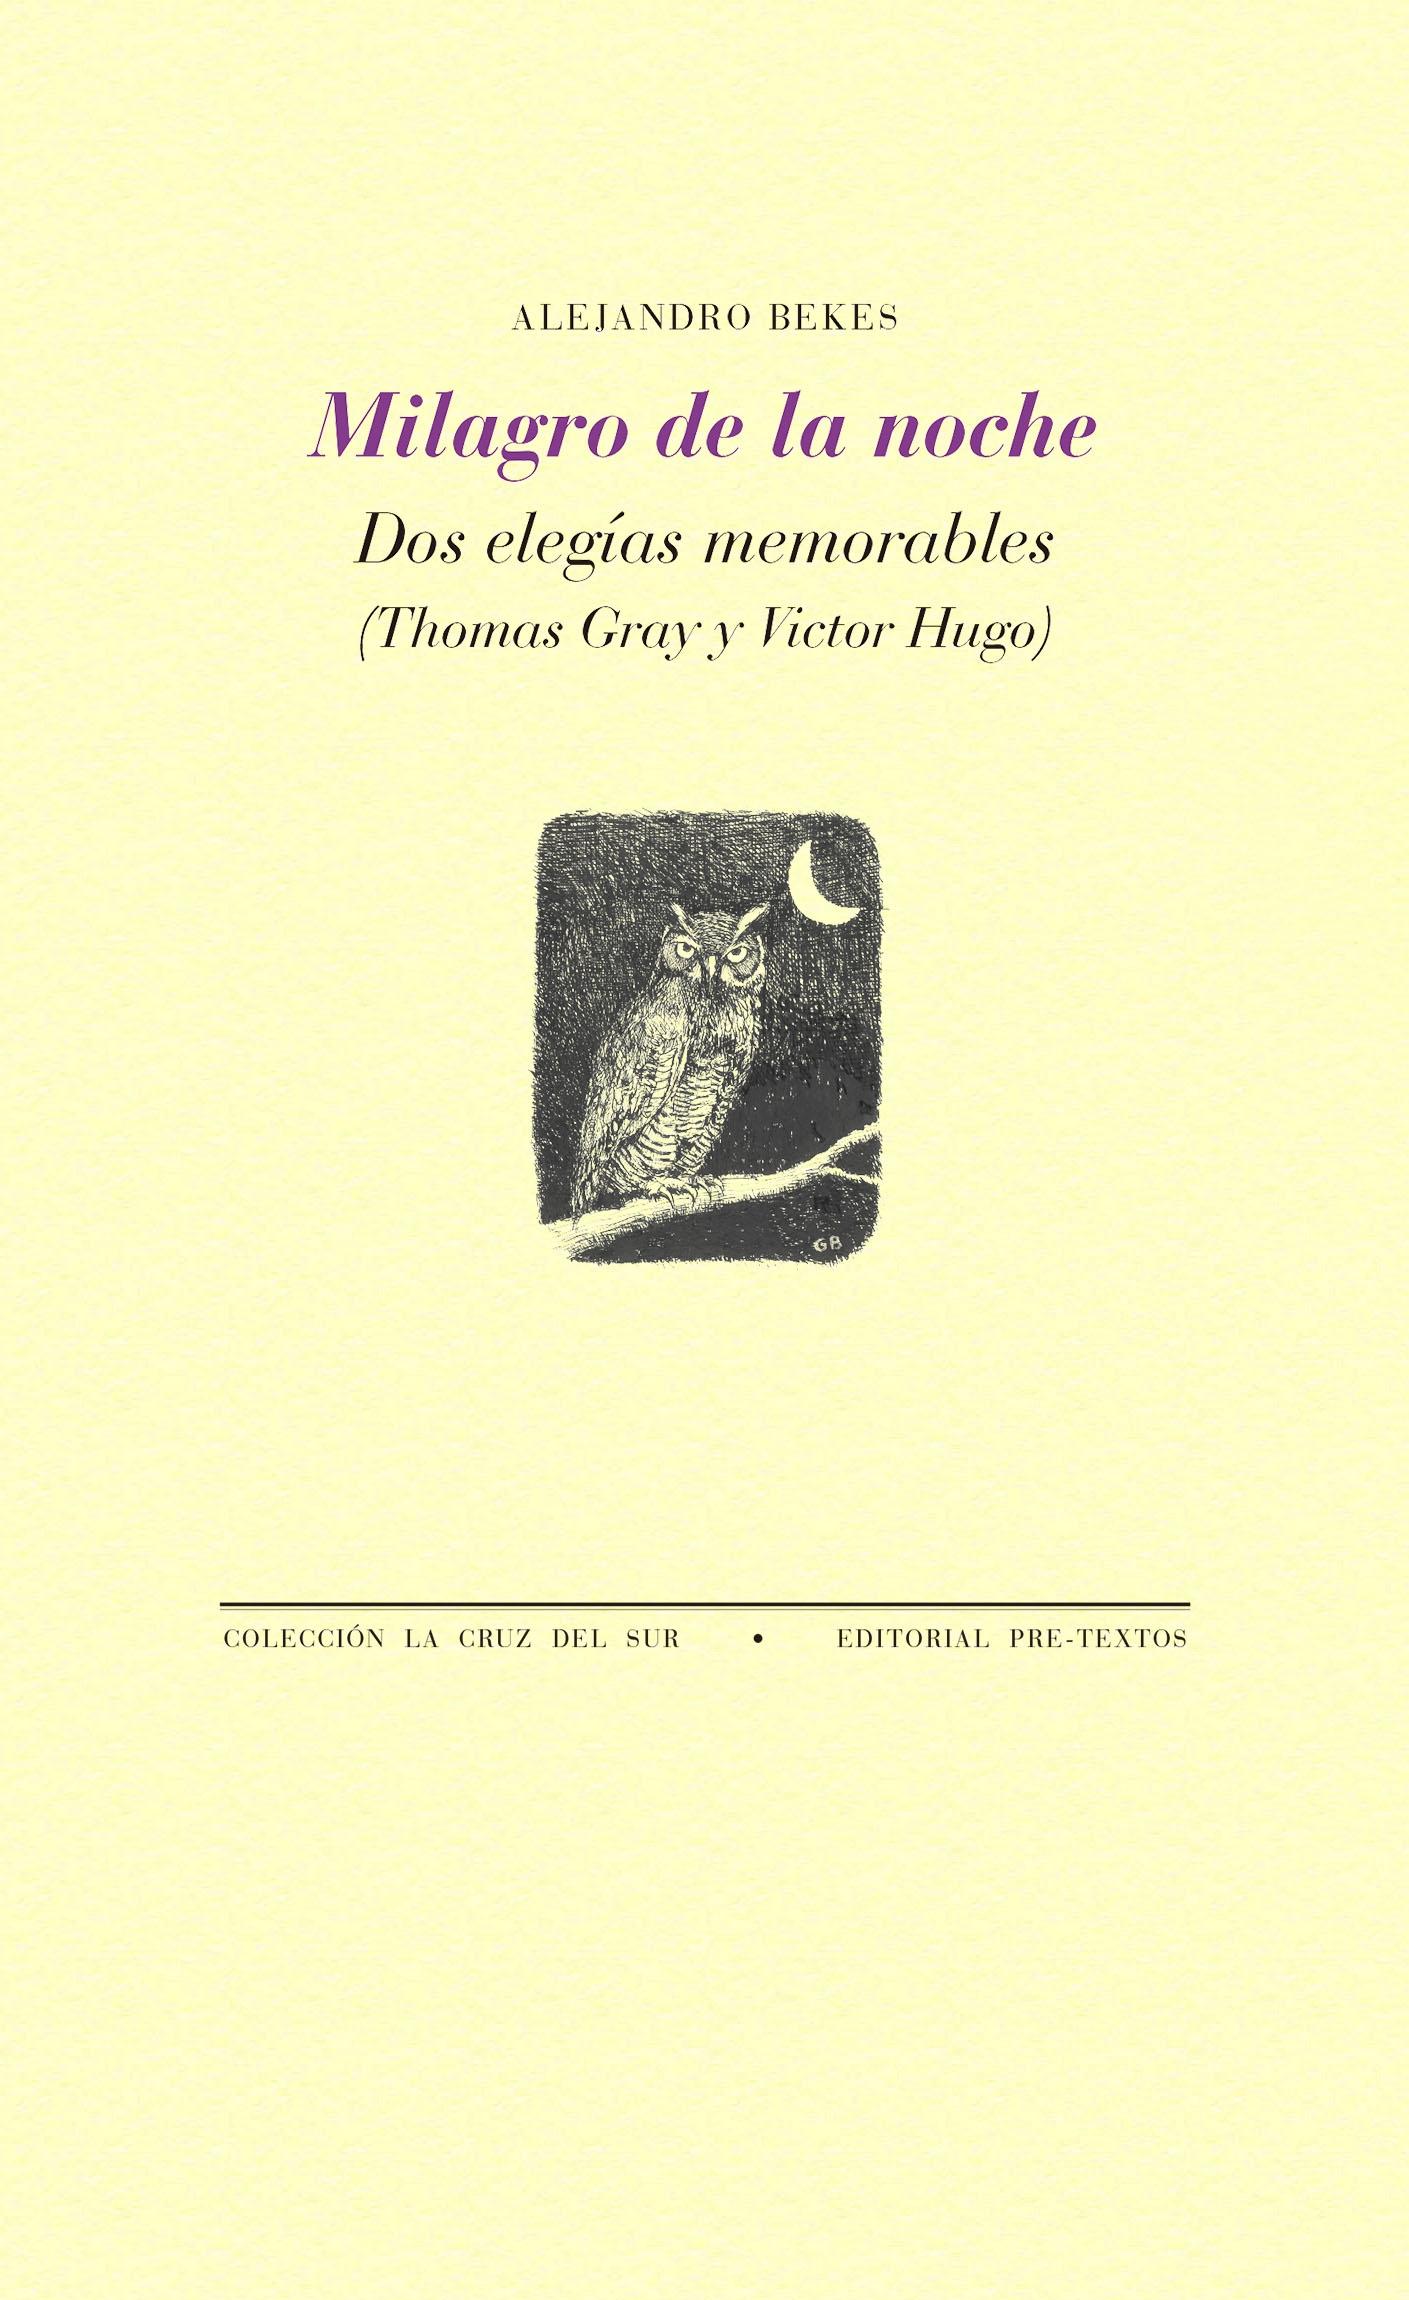 Milagro de la noche "Dos elegías memorables (Thomas Gray y Victor Hugo)"